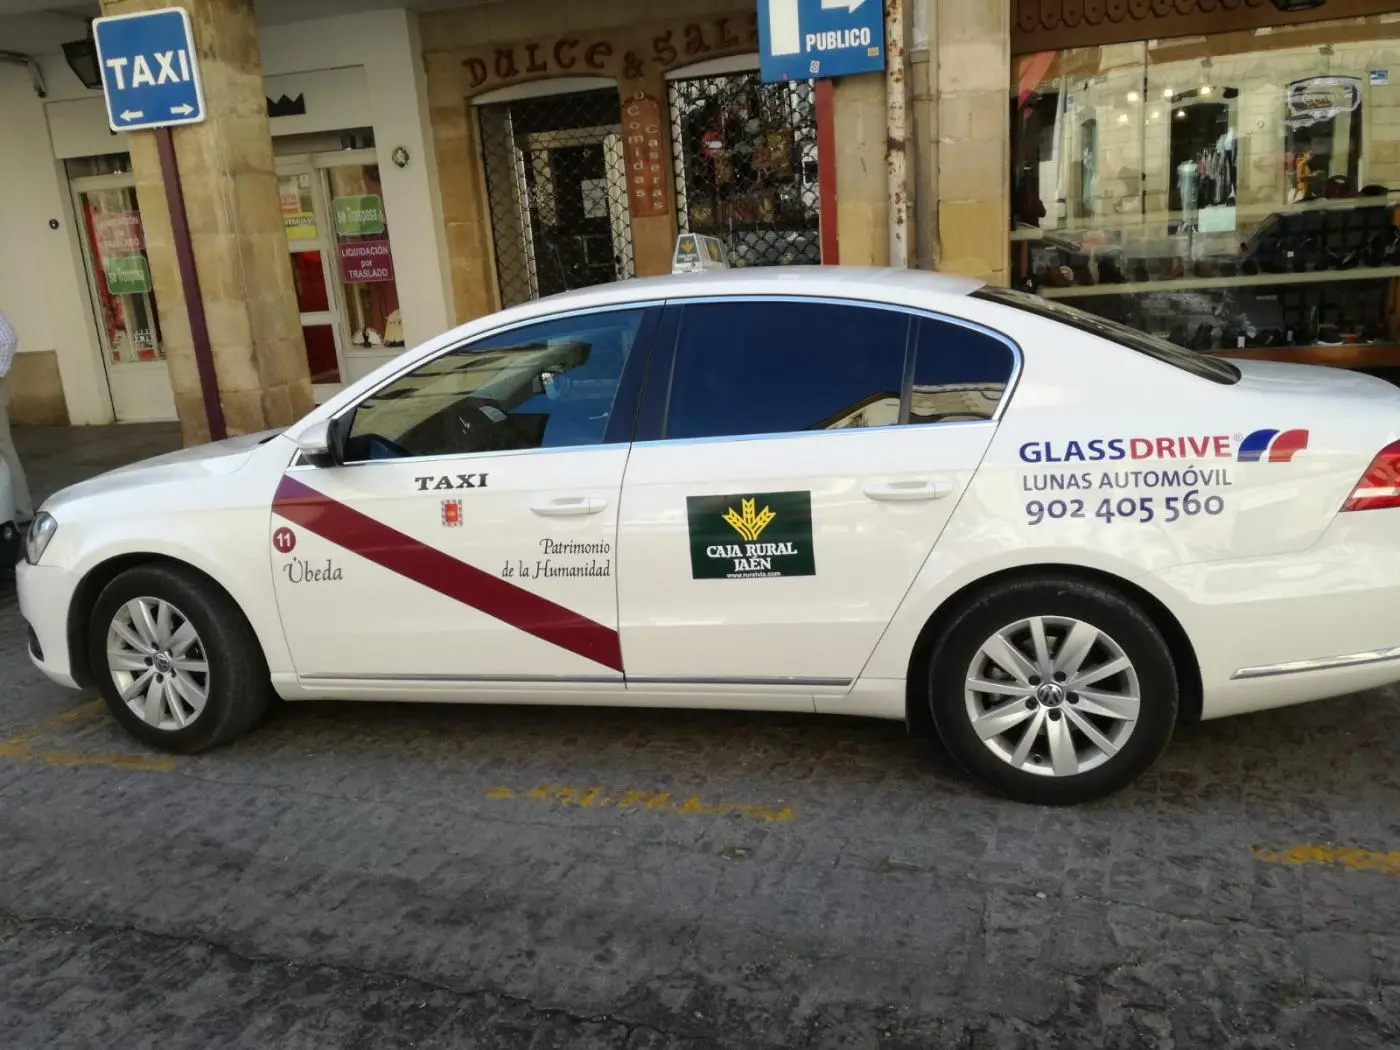 taxi ubeda - Cuánto cuesta un taxi de Úbeda a Jaén